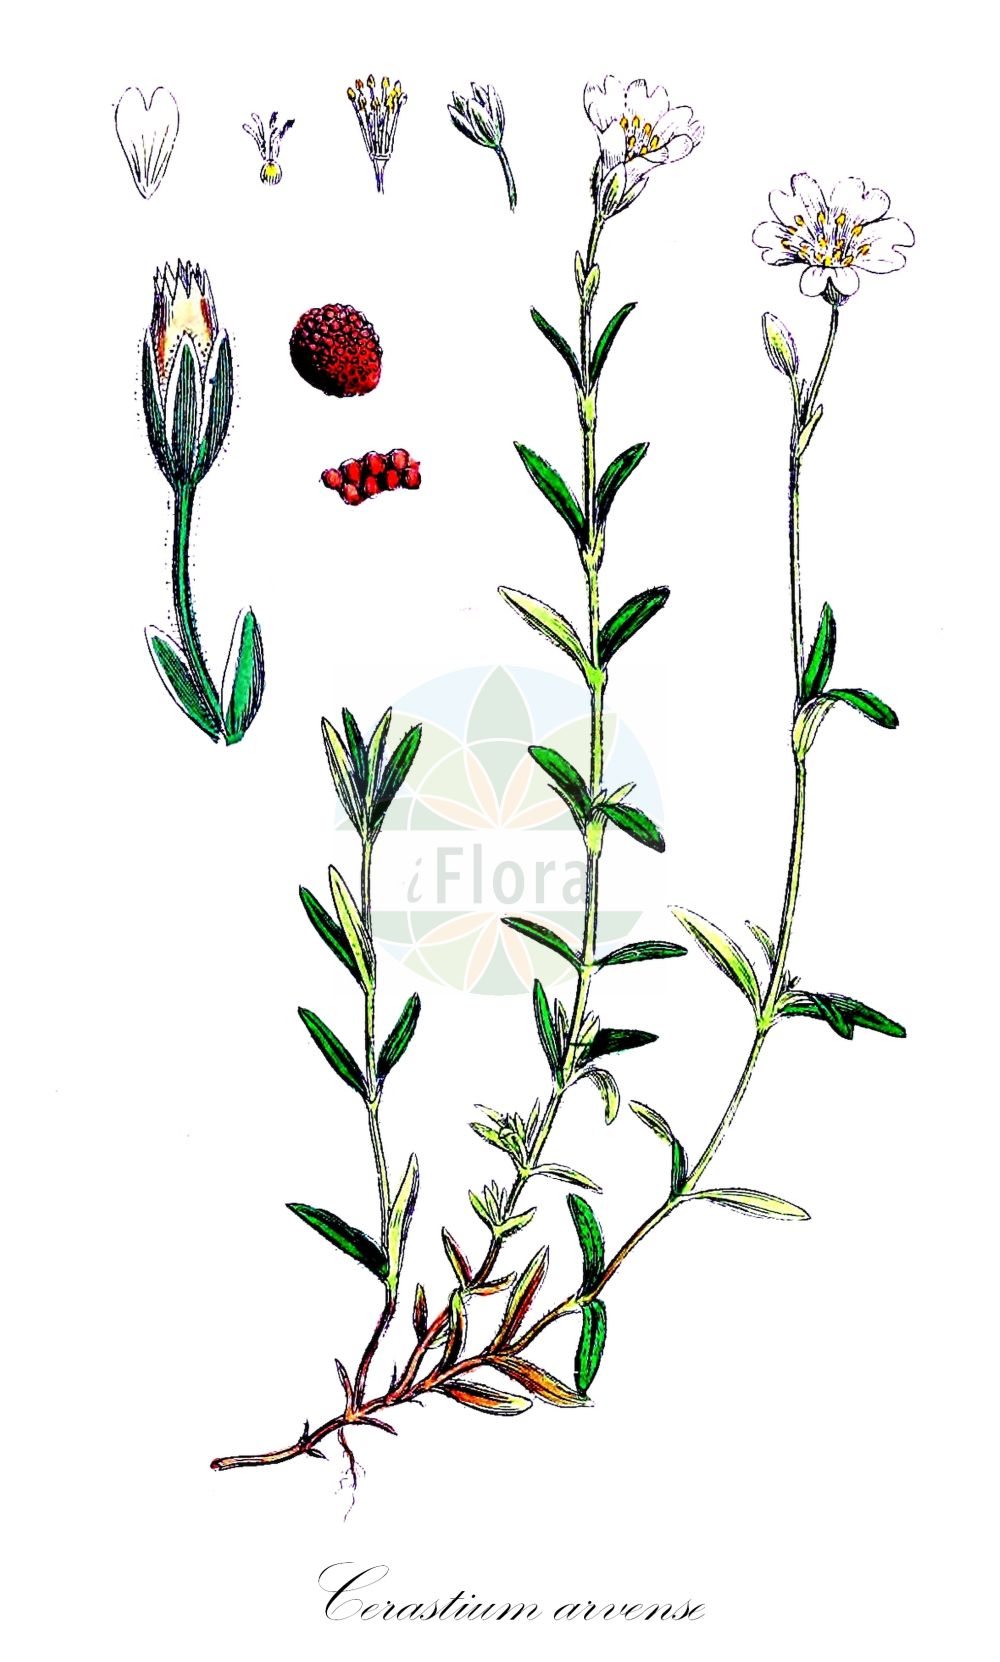 Historische Abbildung von Cerastium arvense (Acker-Hornkraut - Field Mouse-ear). Das Bild zeigt Blatt, Bluete, Frucht und Same. ---- Historical Drawing of Cerastium arvense (Acker-Hornkraut - Field Mouse-ear). The image is showing leaf, flower, fruit and seed.(Cerastium arvense,Acker-Hornkraut,Field Mouse-ear,Cerastium arvense,Cerastium beckianum,Cerastium ciliatum,Cerastium insubricum,Cerastium molle,Cerastium pallasii,Cerastium rigidum,Cerastium strictum,Acker-Hornkraut,Steifes Acker-Hornkraut,Field Mouse-ear,Field Chickweed,Field Mouse-ear Chickweed,Meadow Chickweed,Mouse-ear Chickweed,Cerastium,Hornkraut,Chickweed,Caryophyllaceae,Nelkengewächse,Pink family,Blatt,Bluete,Frucht,Same,leaf,flower,fruit,seed,Sowerby (1790-1813))